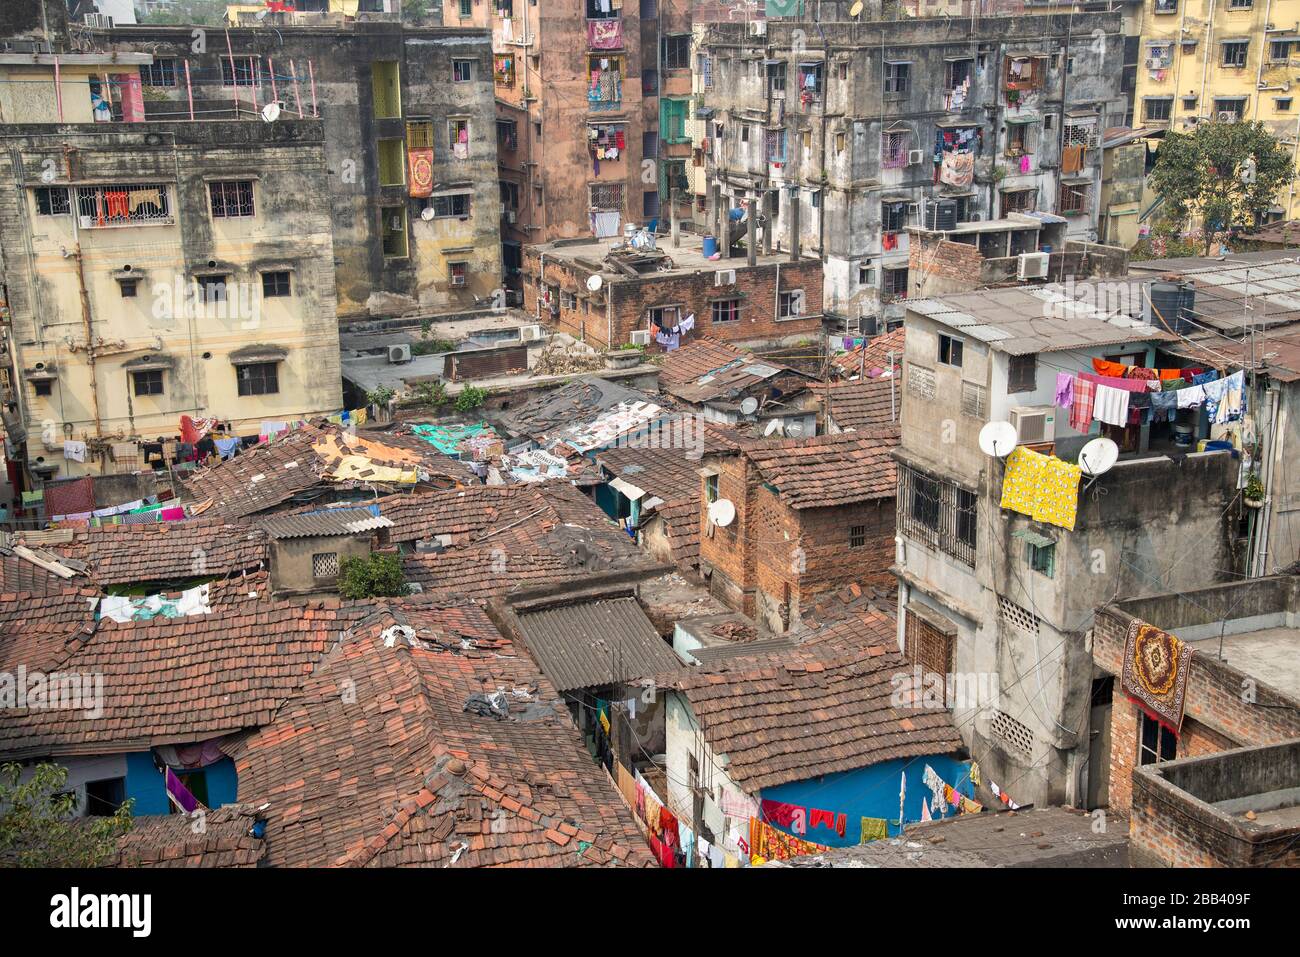 city centre of Calcutta, India Stock Photo